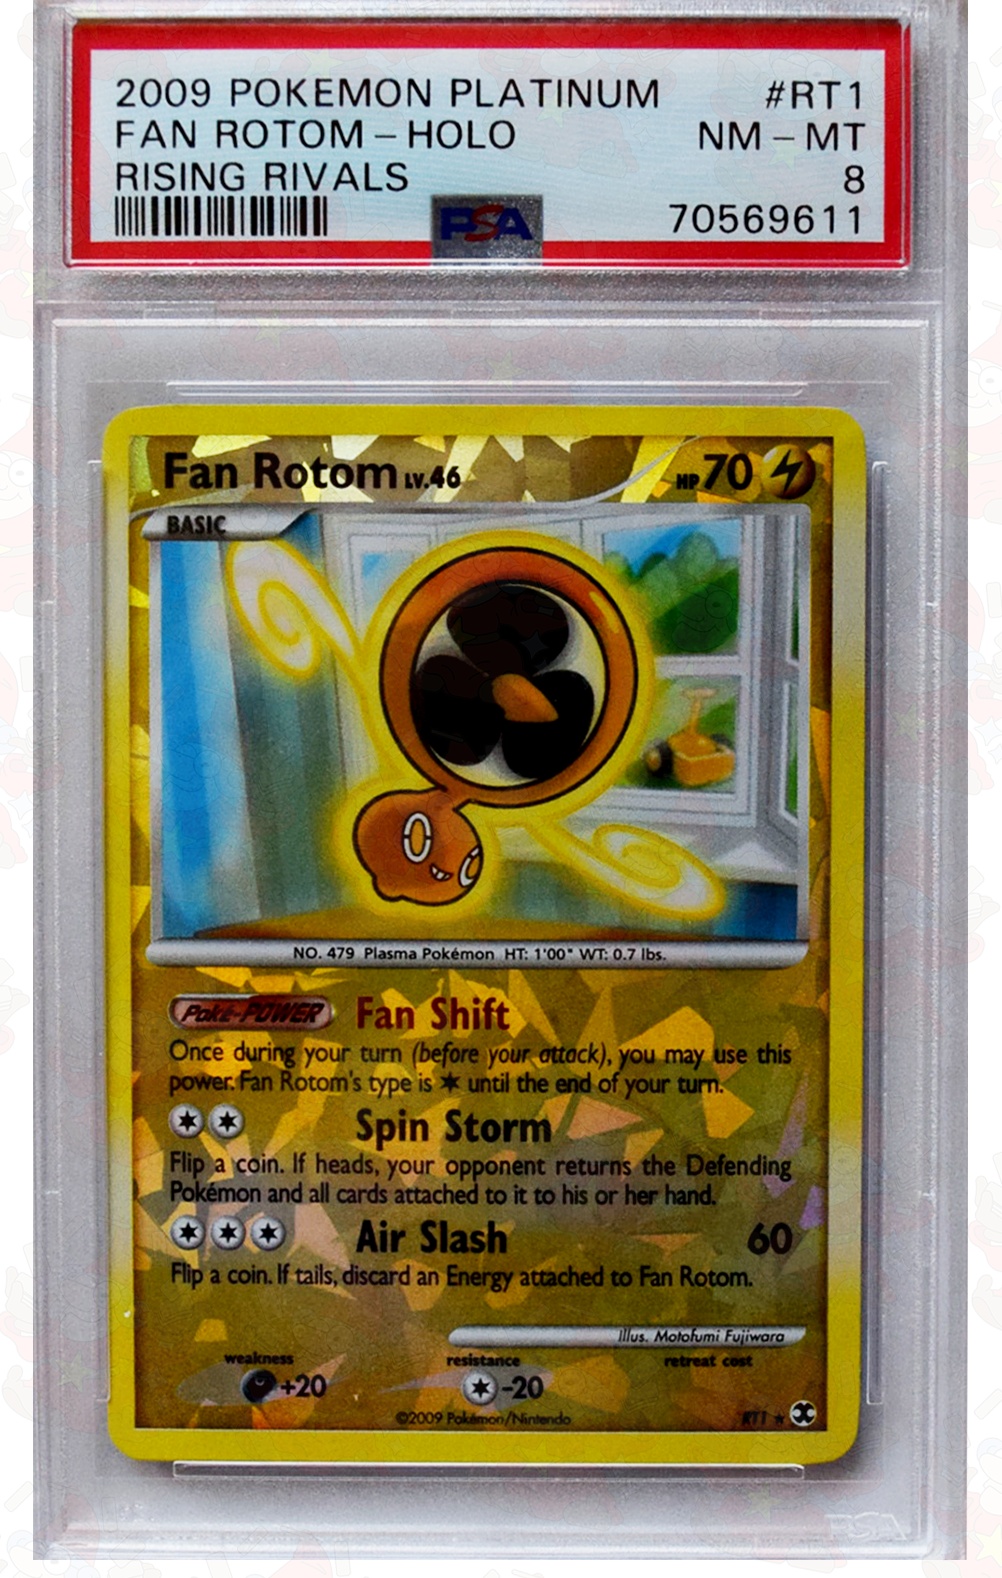 2009 Pokemon Platinum - Fan Rotom (#RT1) - Holo - Rising Rivals - PSA 8 NM - MT